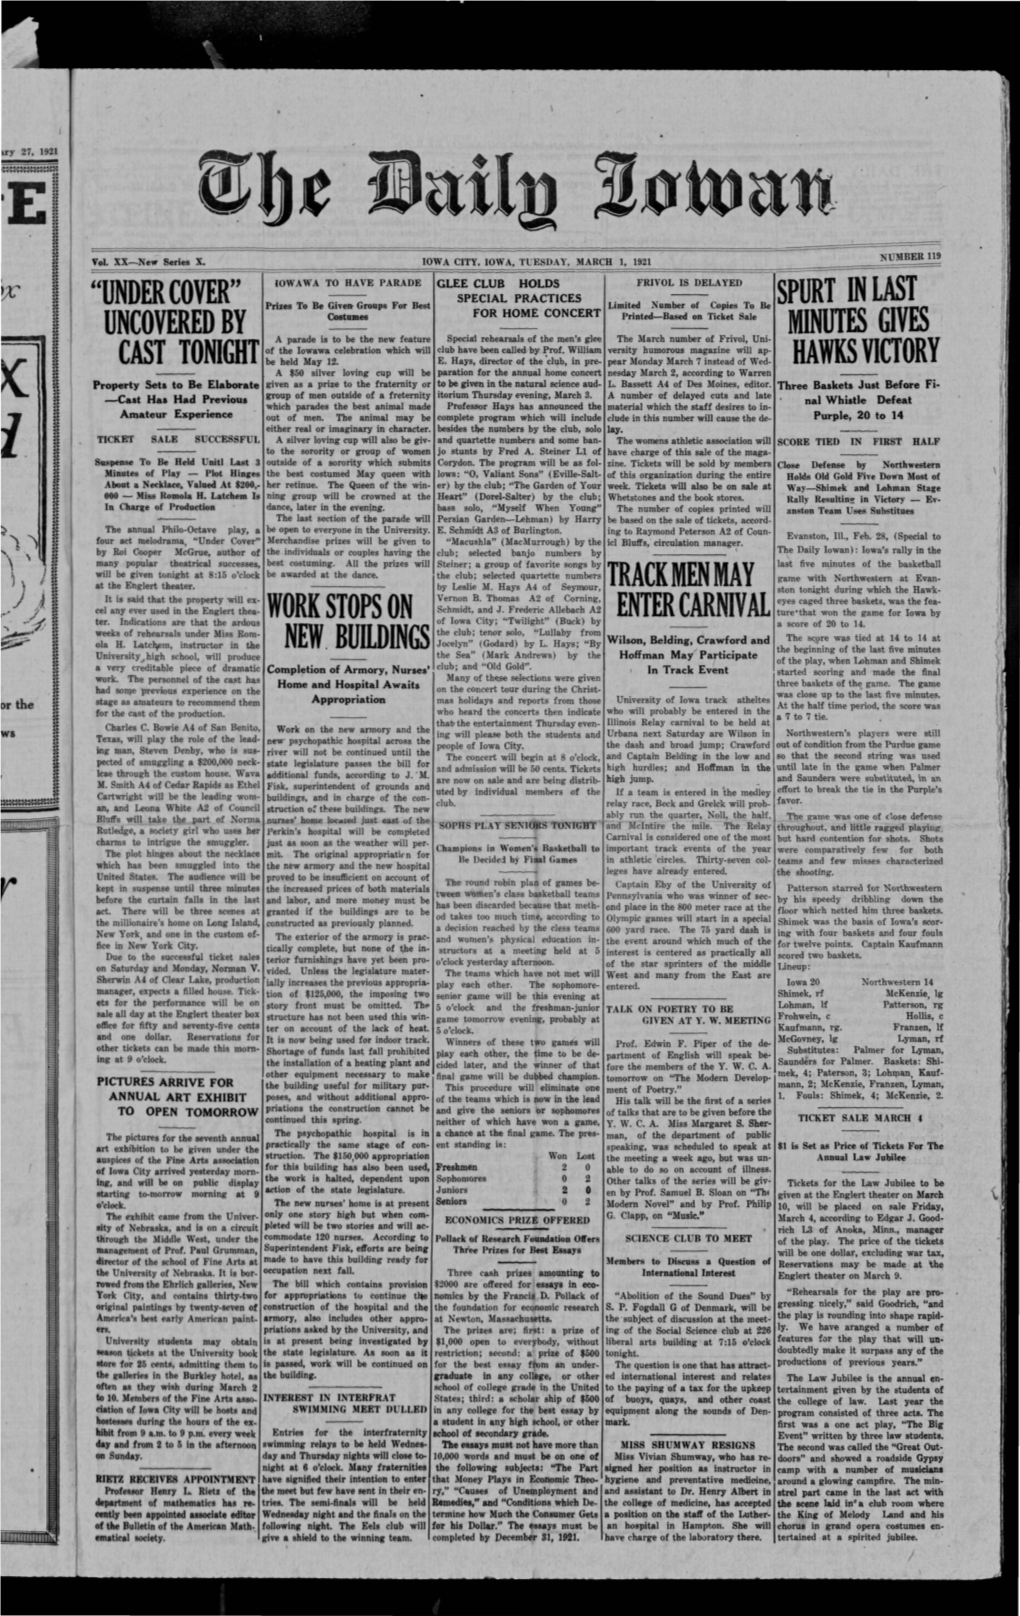 Daily Iowan (Iowa City, Iowa), 1921-03-01